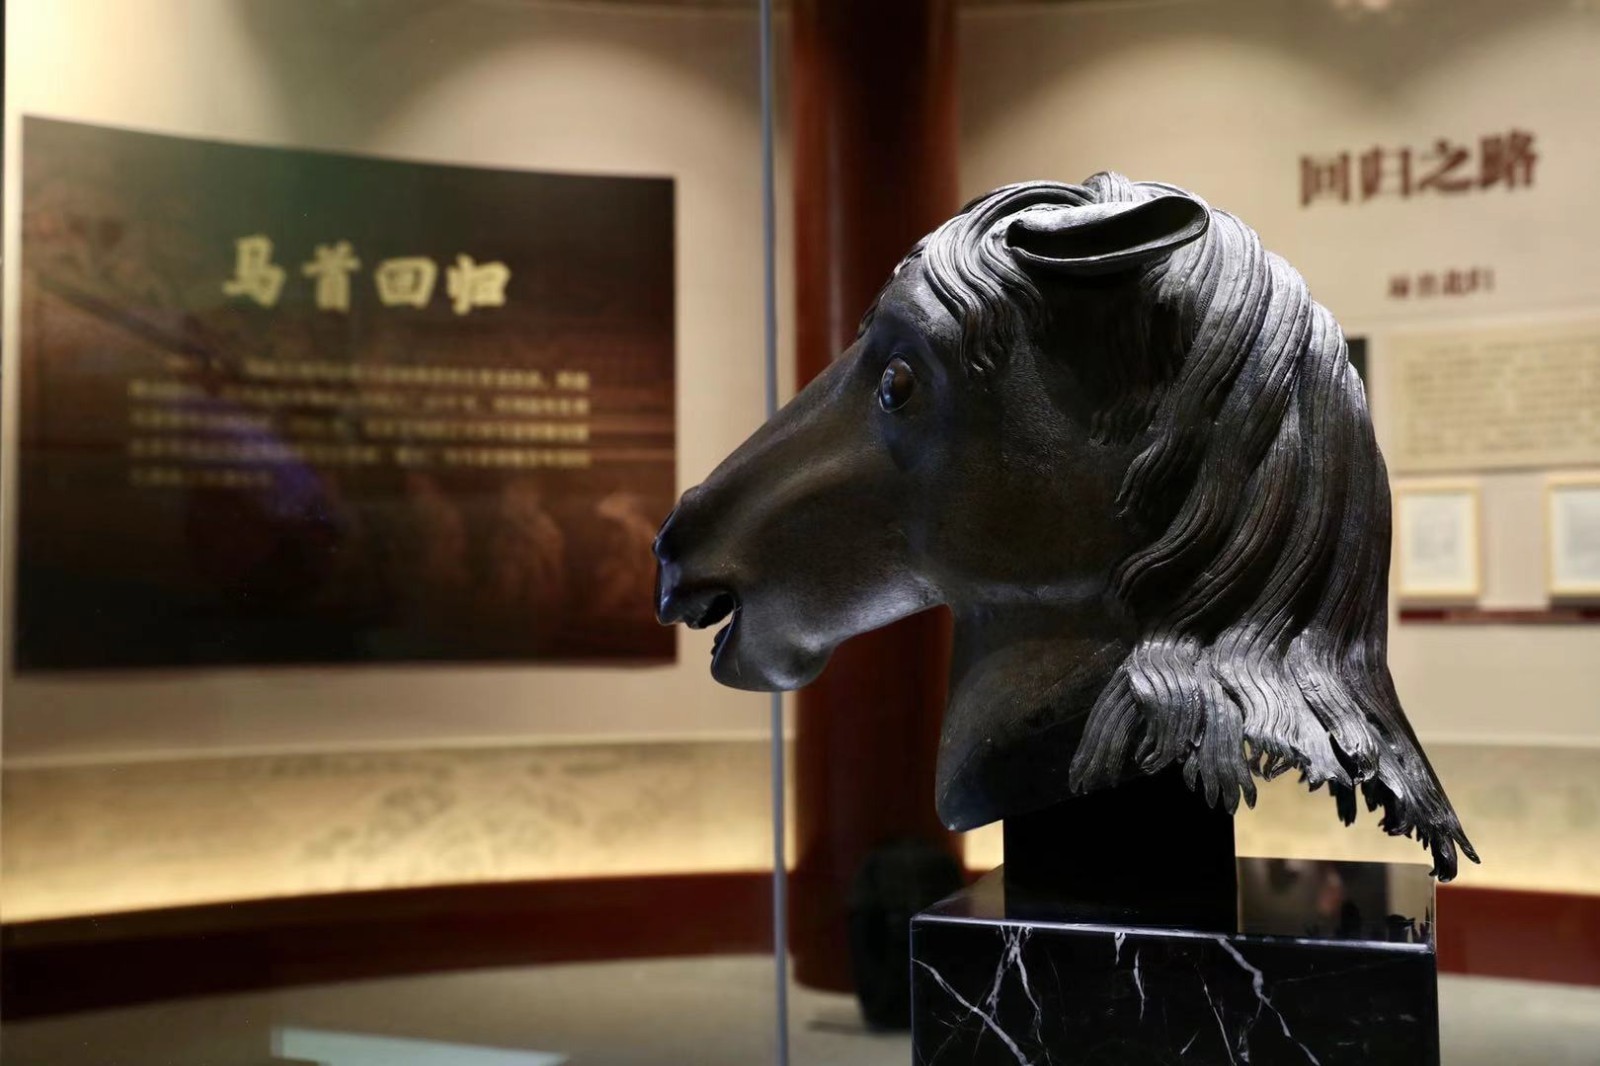 据悉,《百年梦圆——圆明园马首铜像回归展》由国家文物局,北京市人民